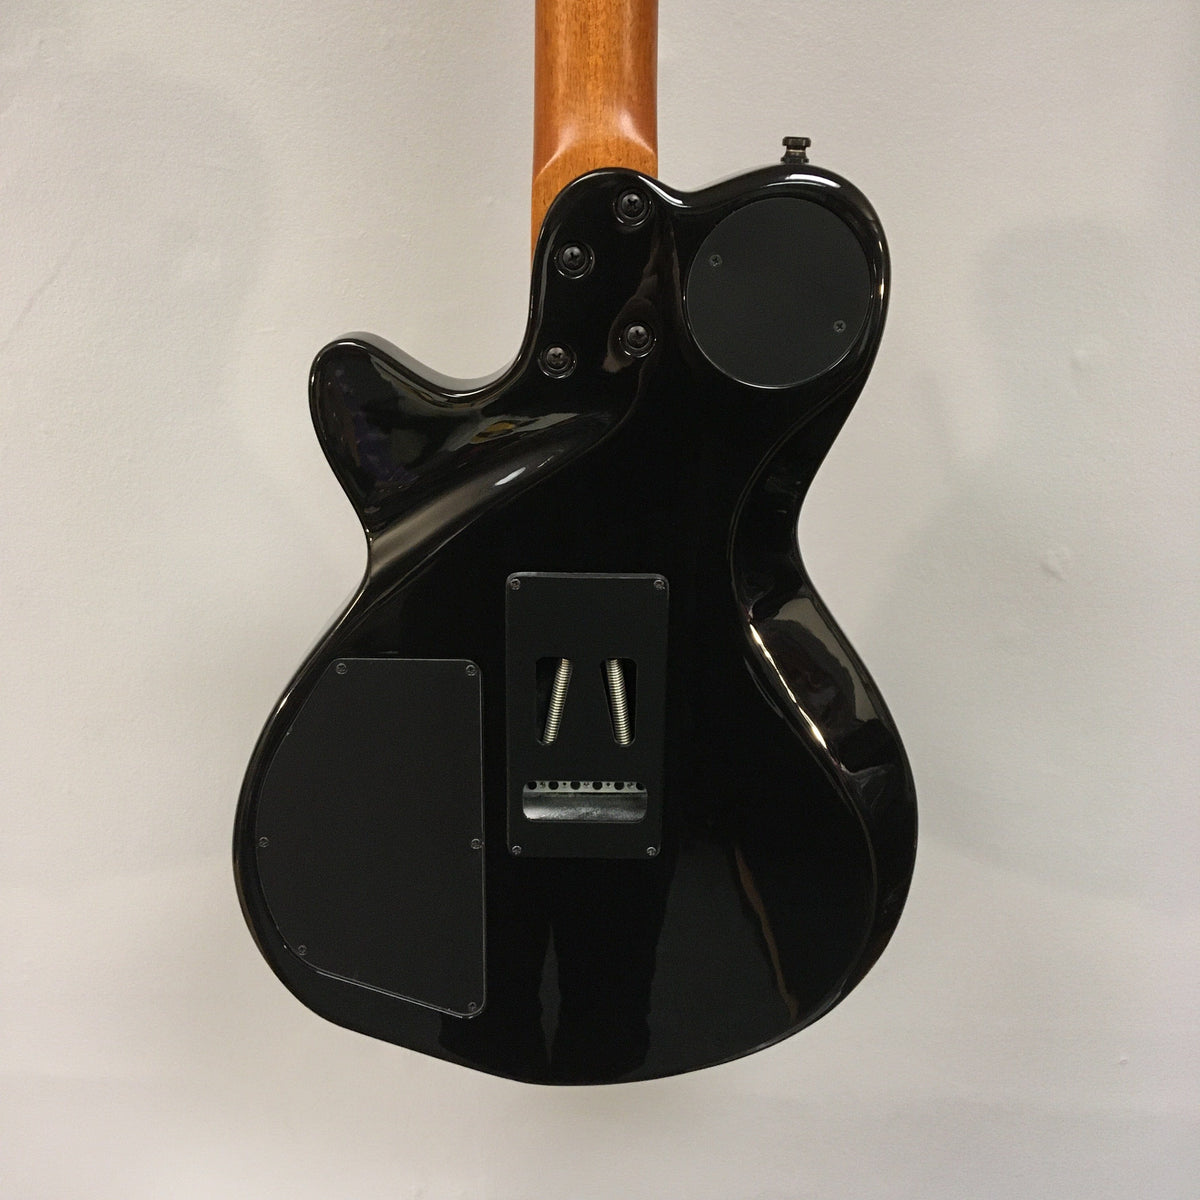 Godin xtSA Trans Black Flame Used Guitars on Main